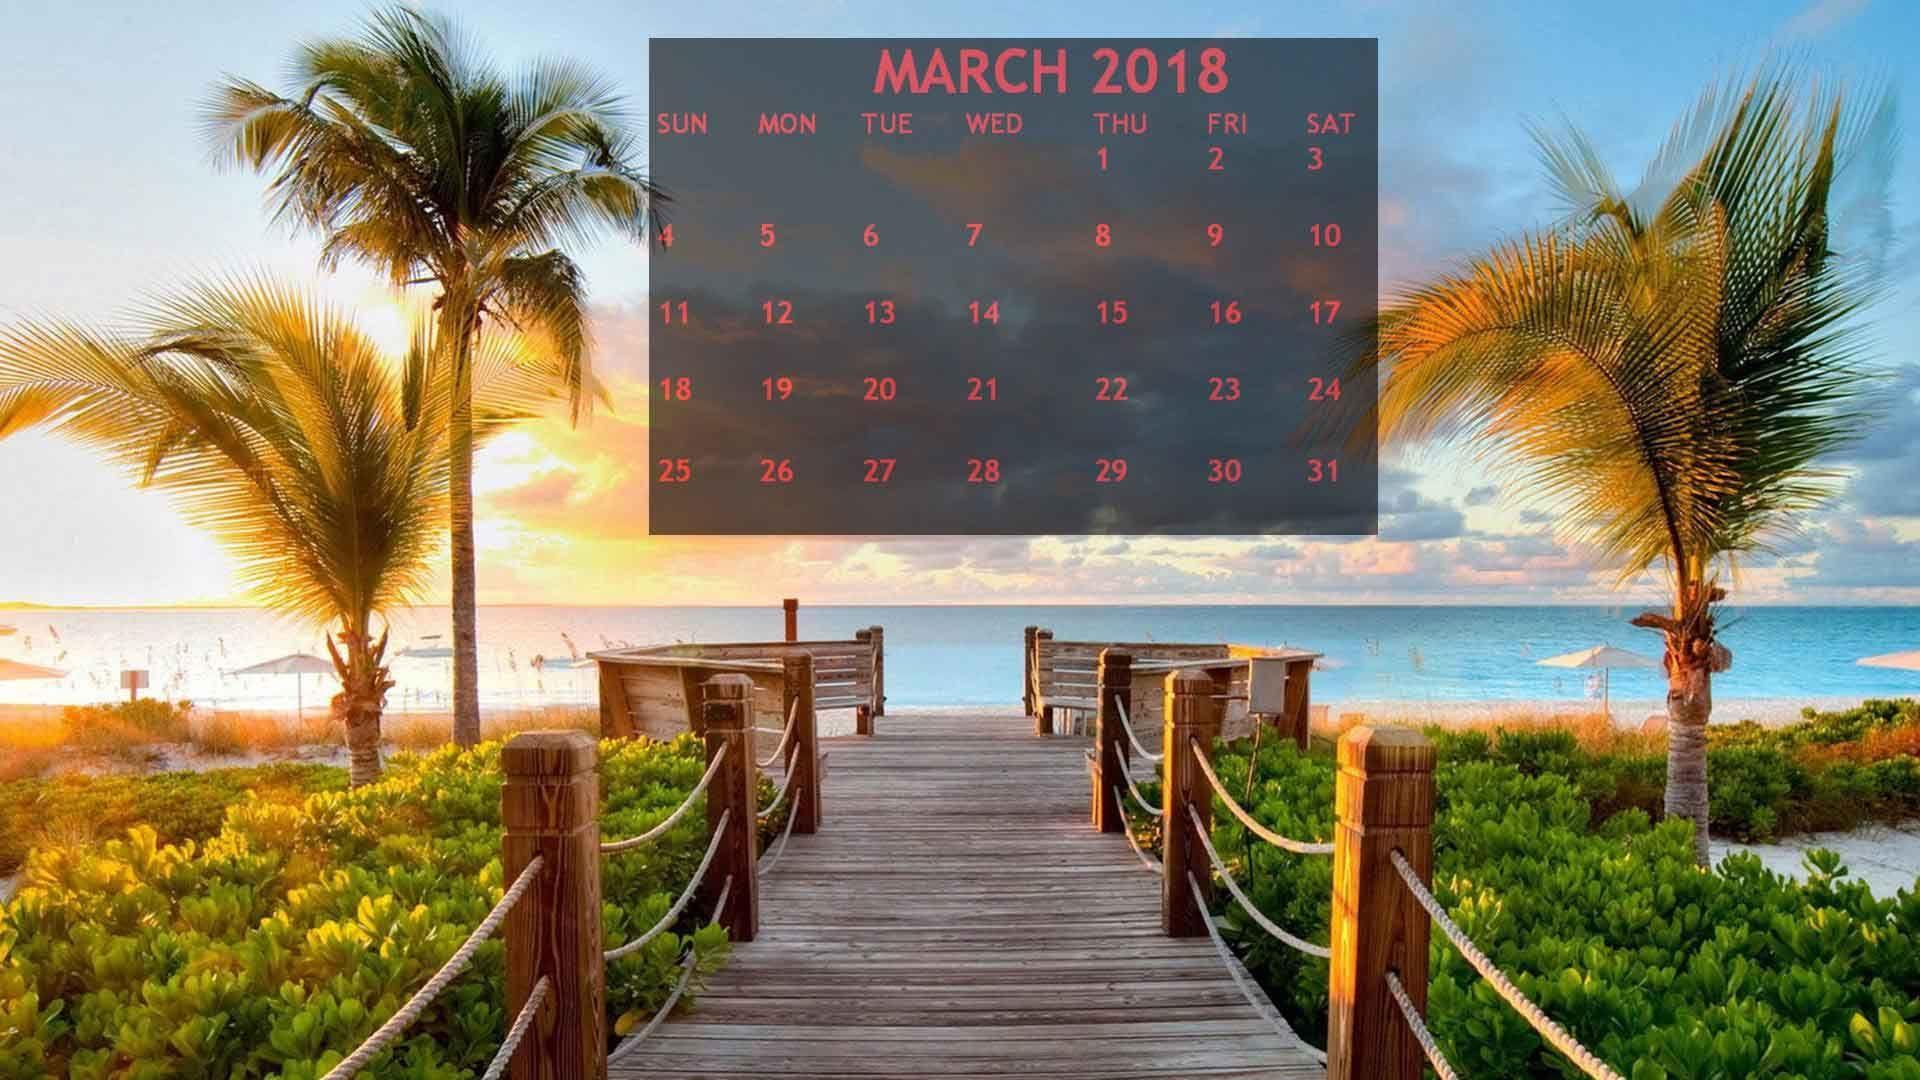 March 2018 Calendar Beach Wallpaper Calendar Wallpaper